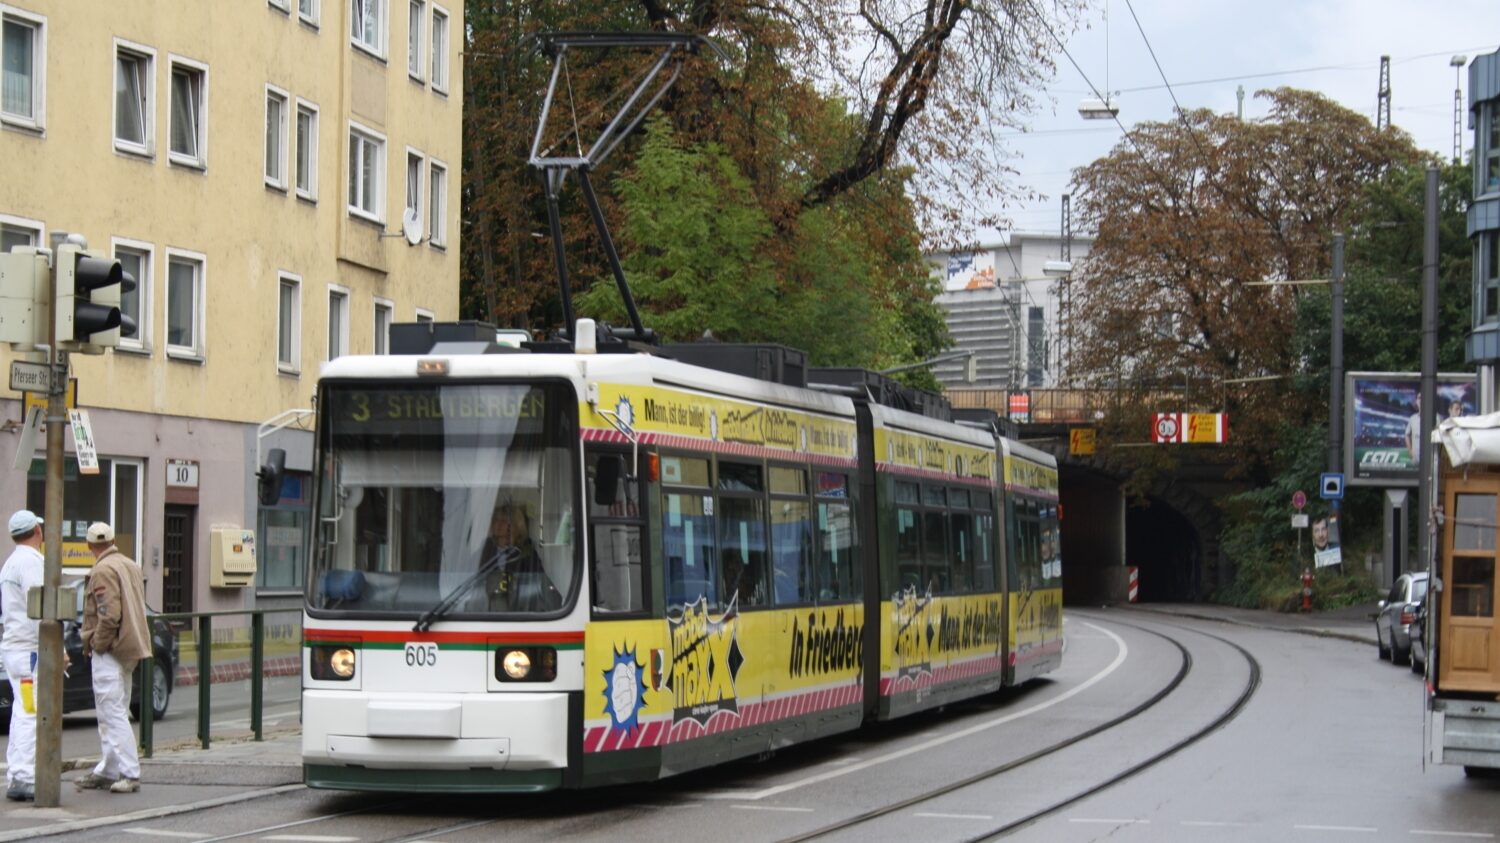 Tramvaj typu GT6M v Augsburgu dne 14. 9. 2009. Celkem bylo do města dodáno 11 těchto vozů. Jeden z nich jako náhrada nehodou zničeného prototypu. (zdroj: Wikipedia.org, foto: Roehrensee)